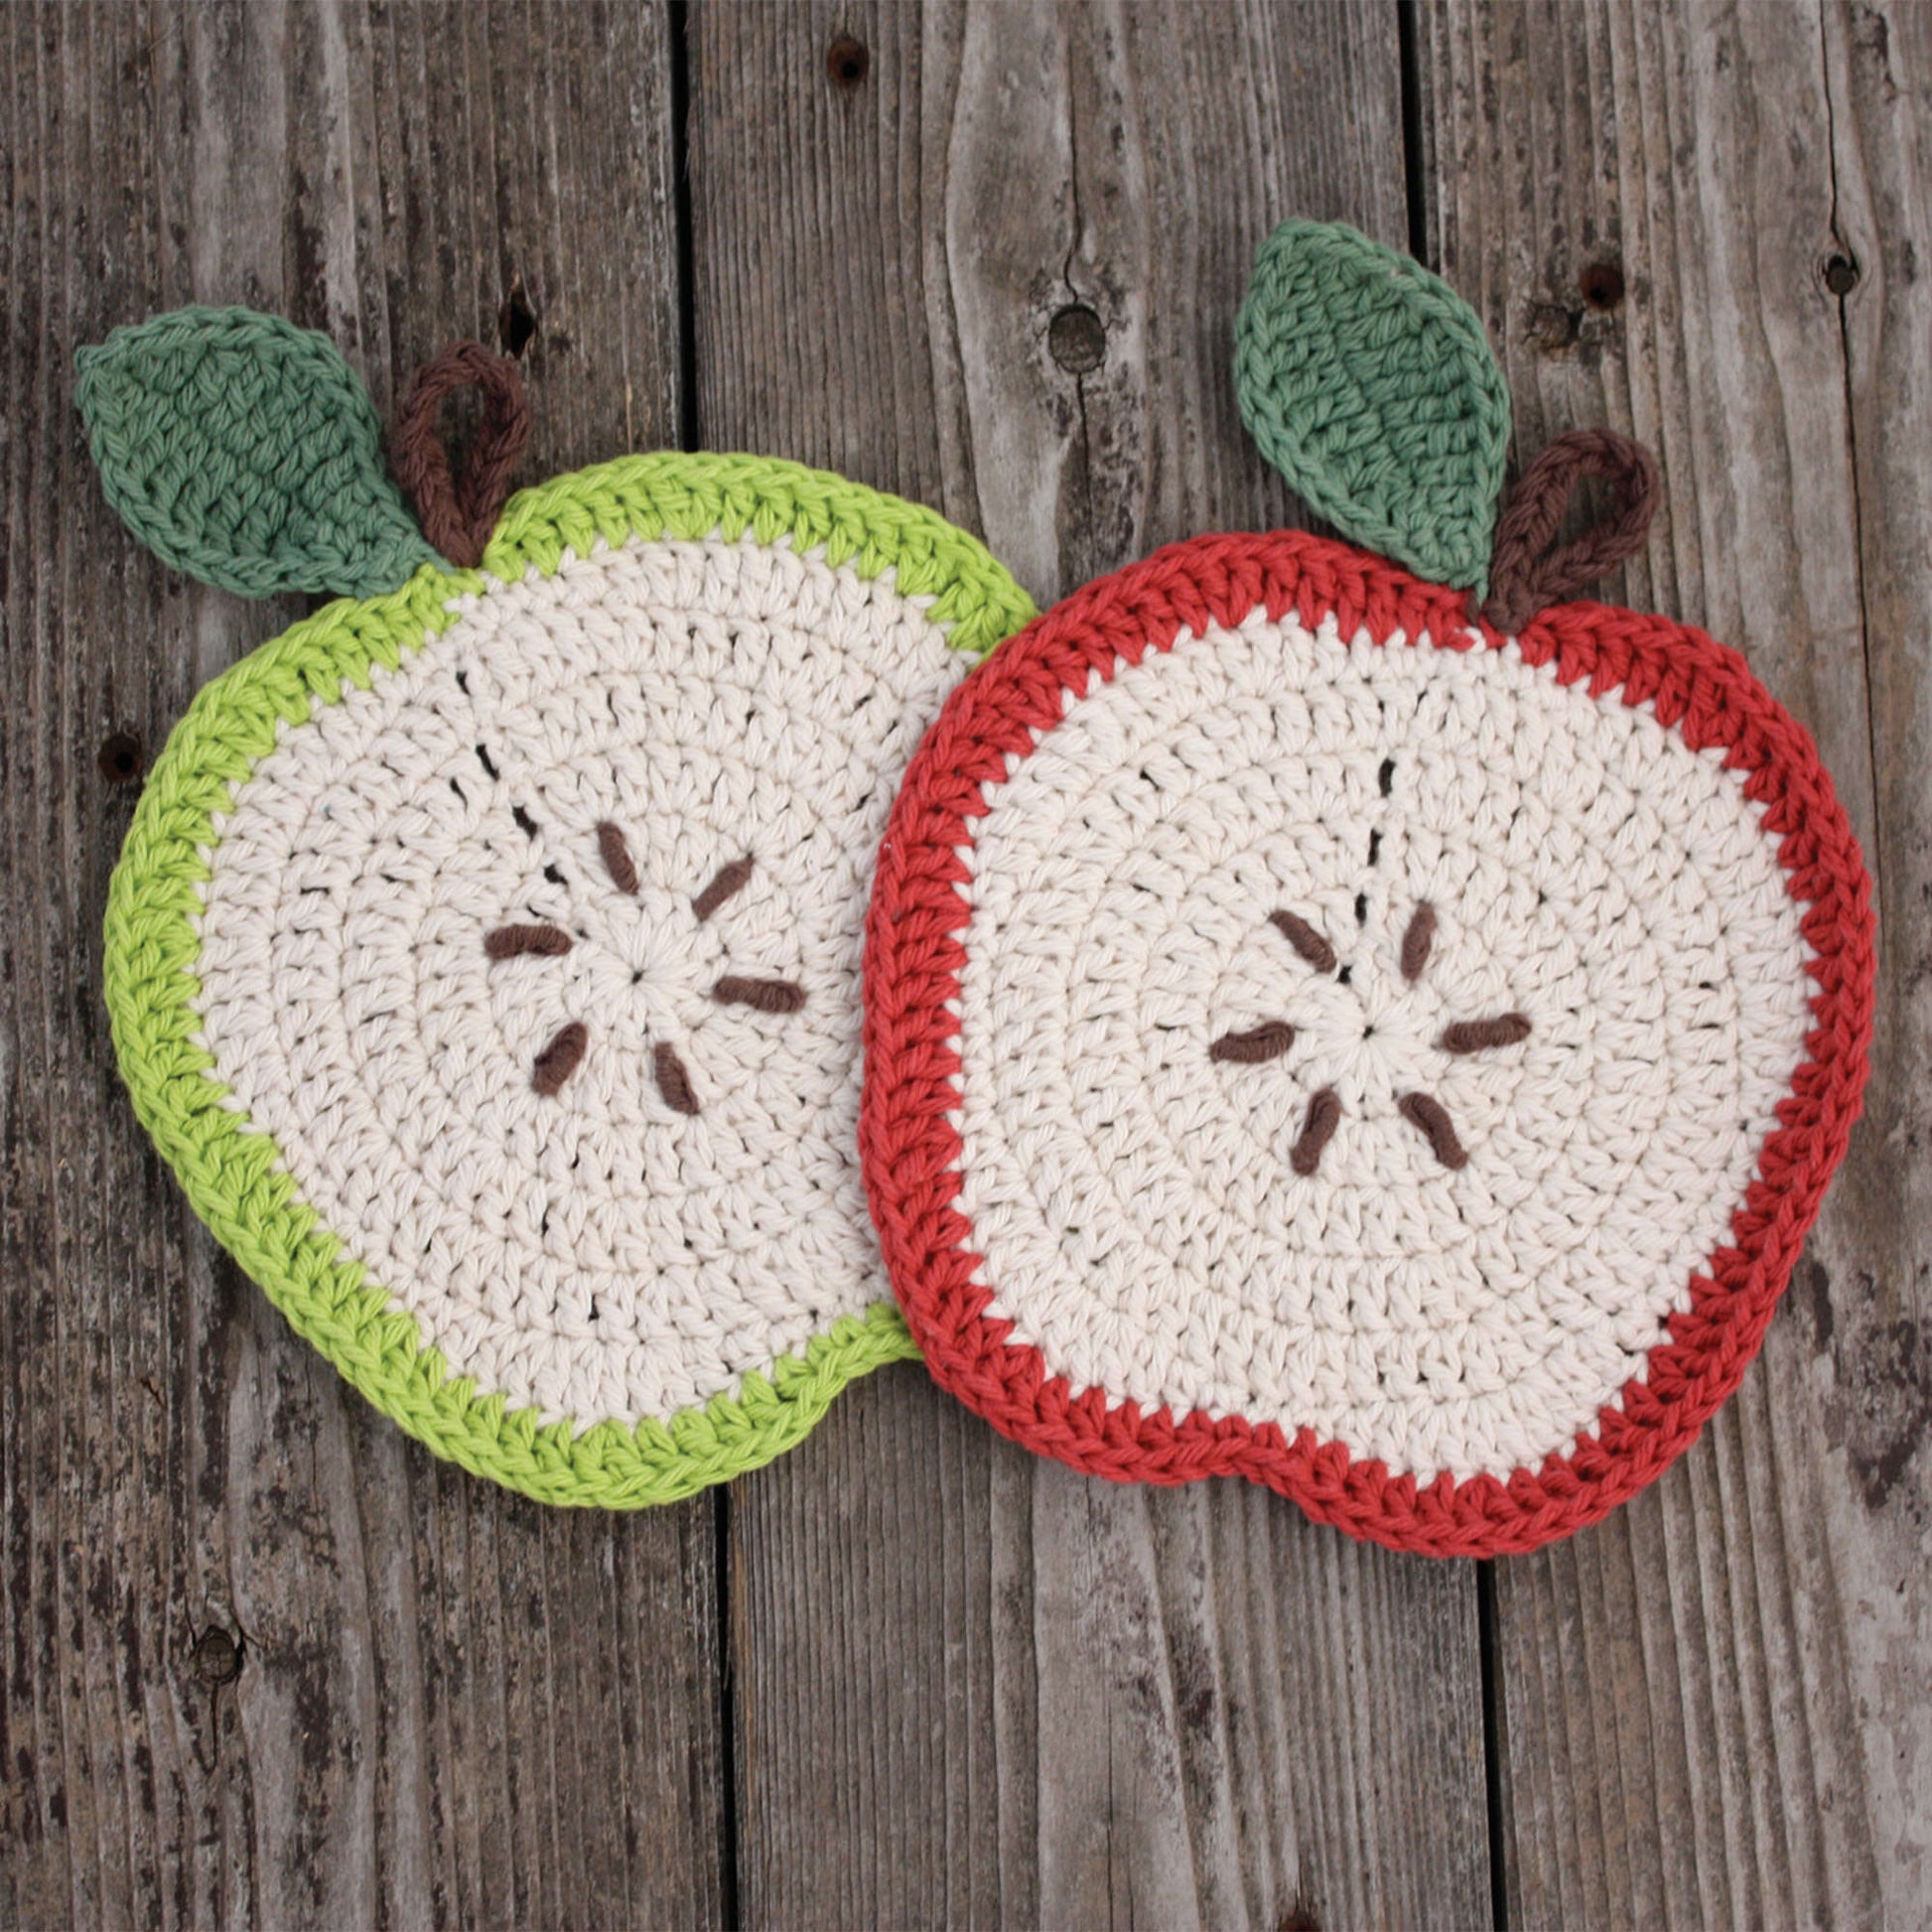 Free Lily Sugar'n Cream Apple a Day Dishcloth Crochet Pattern